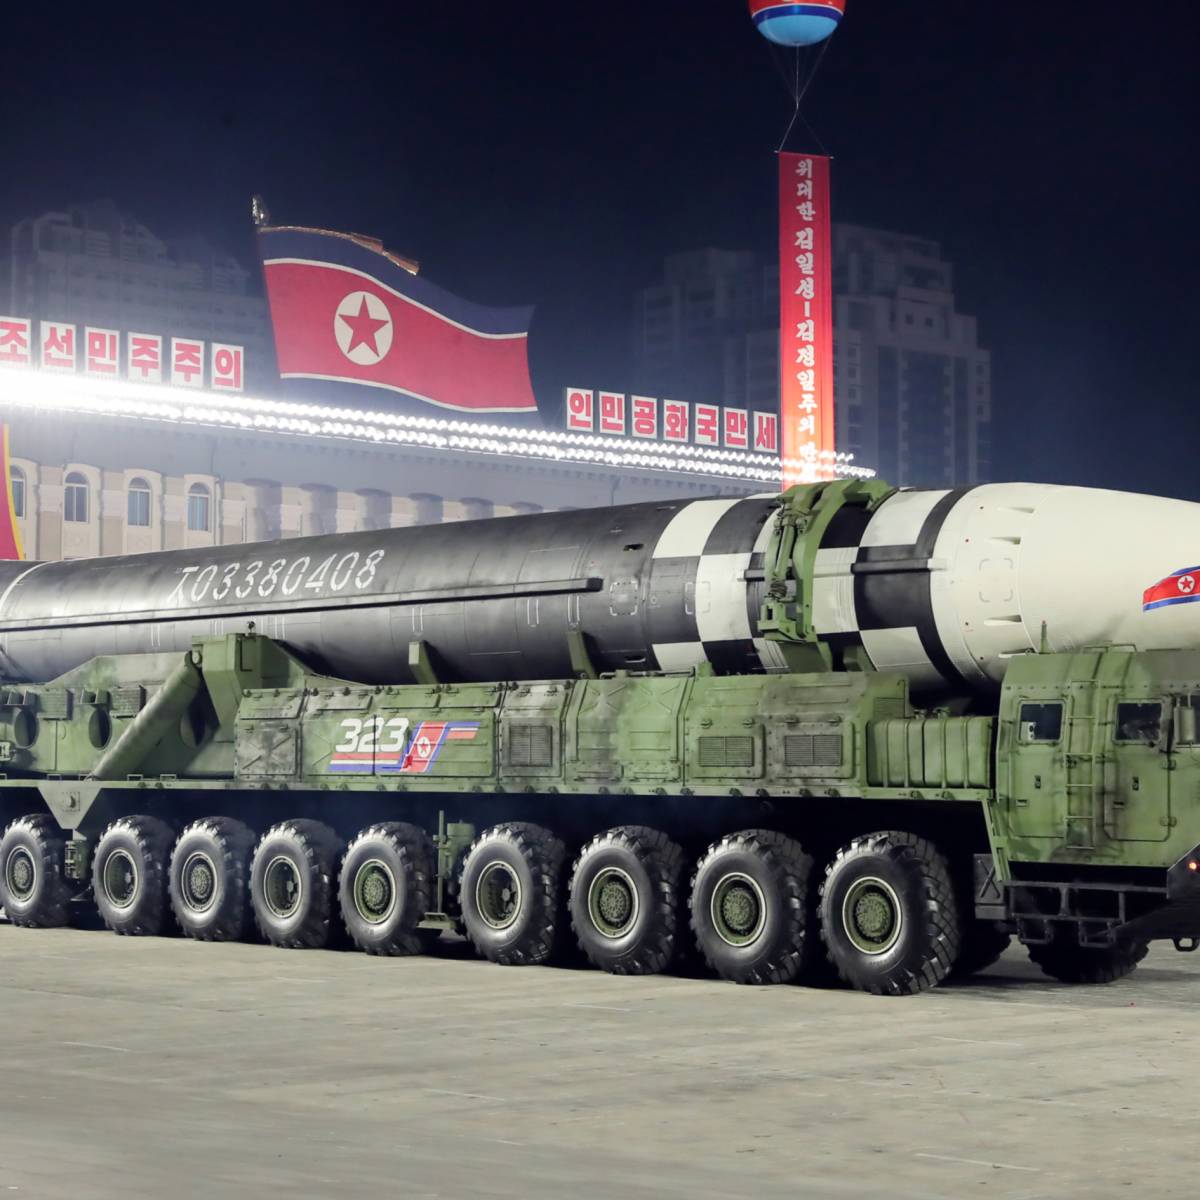 «Вызов для США». Запуск баллистической ракеты КНДР меняет баланс сил в Азии